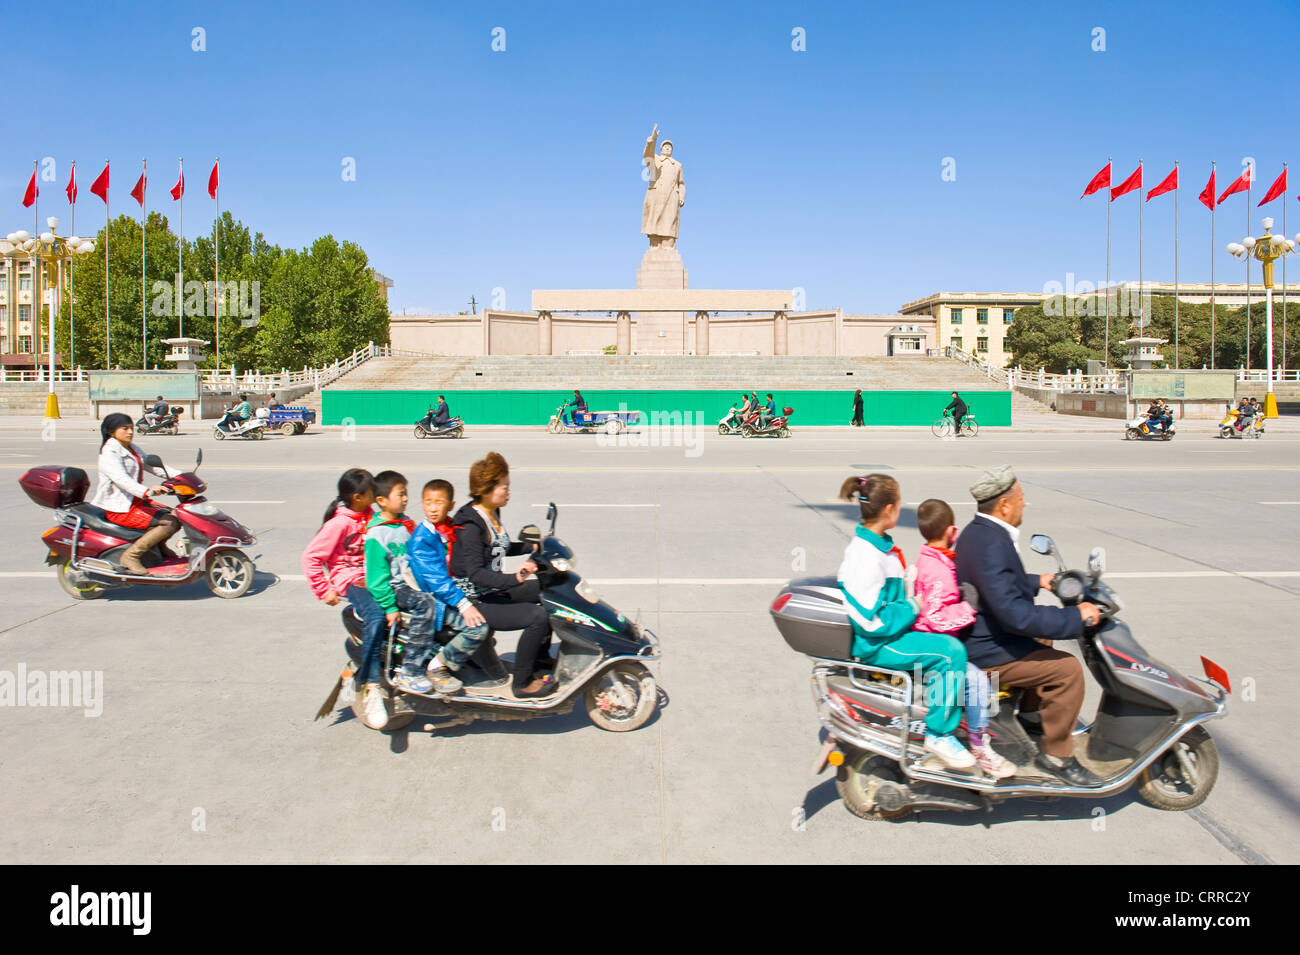 Mit Bewegungsunschärfe.  Fahrzeuge und Personen reisen Sie vorbei an der Statue von Mao Zedong gegenüber dem Stadtplatz in Kashgar. Stockfoto